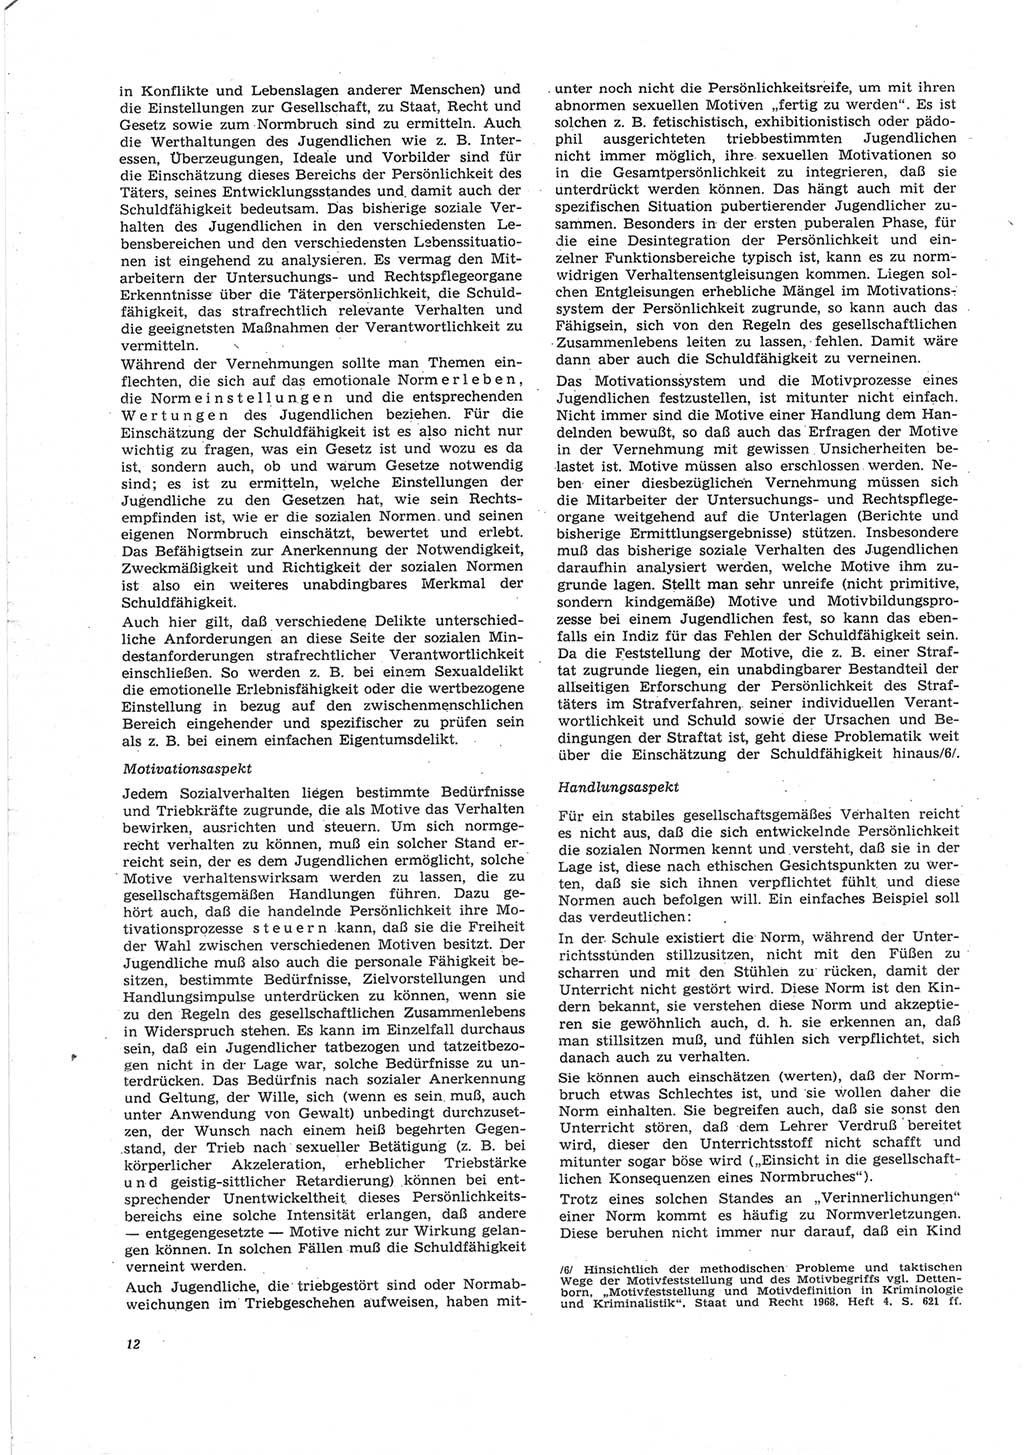 Neue Justiz (NJ), Zeitschrift für Recht und Rechtswissenschaft [Deutsche Demokratische Republik (DDR)], 25. Jahrgang 1971, Seite 12 (NJ DDR 1971, S. 12)